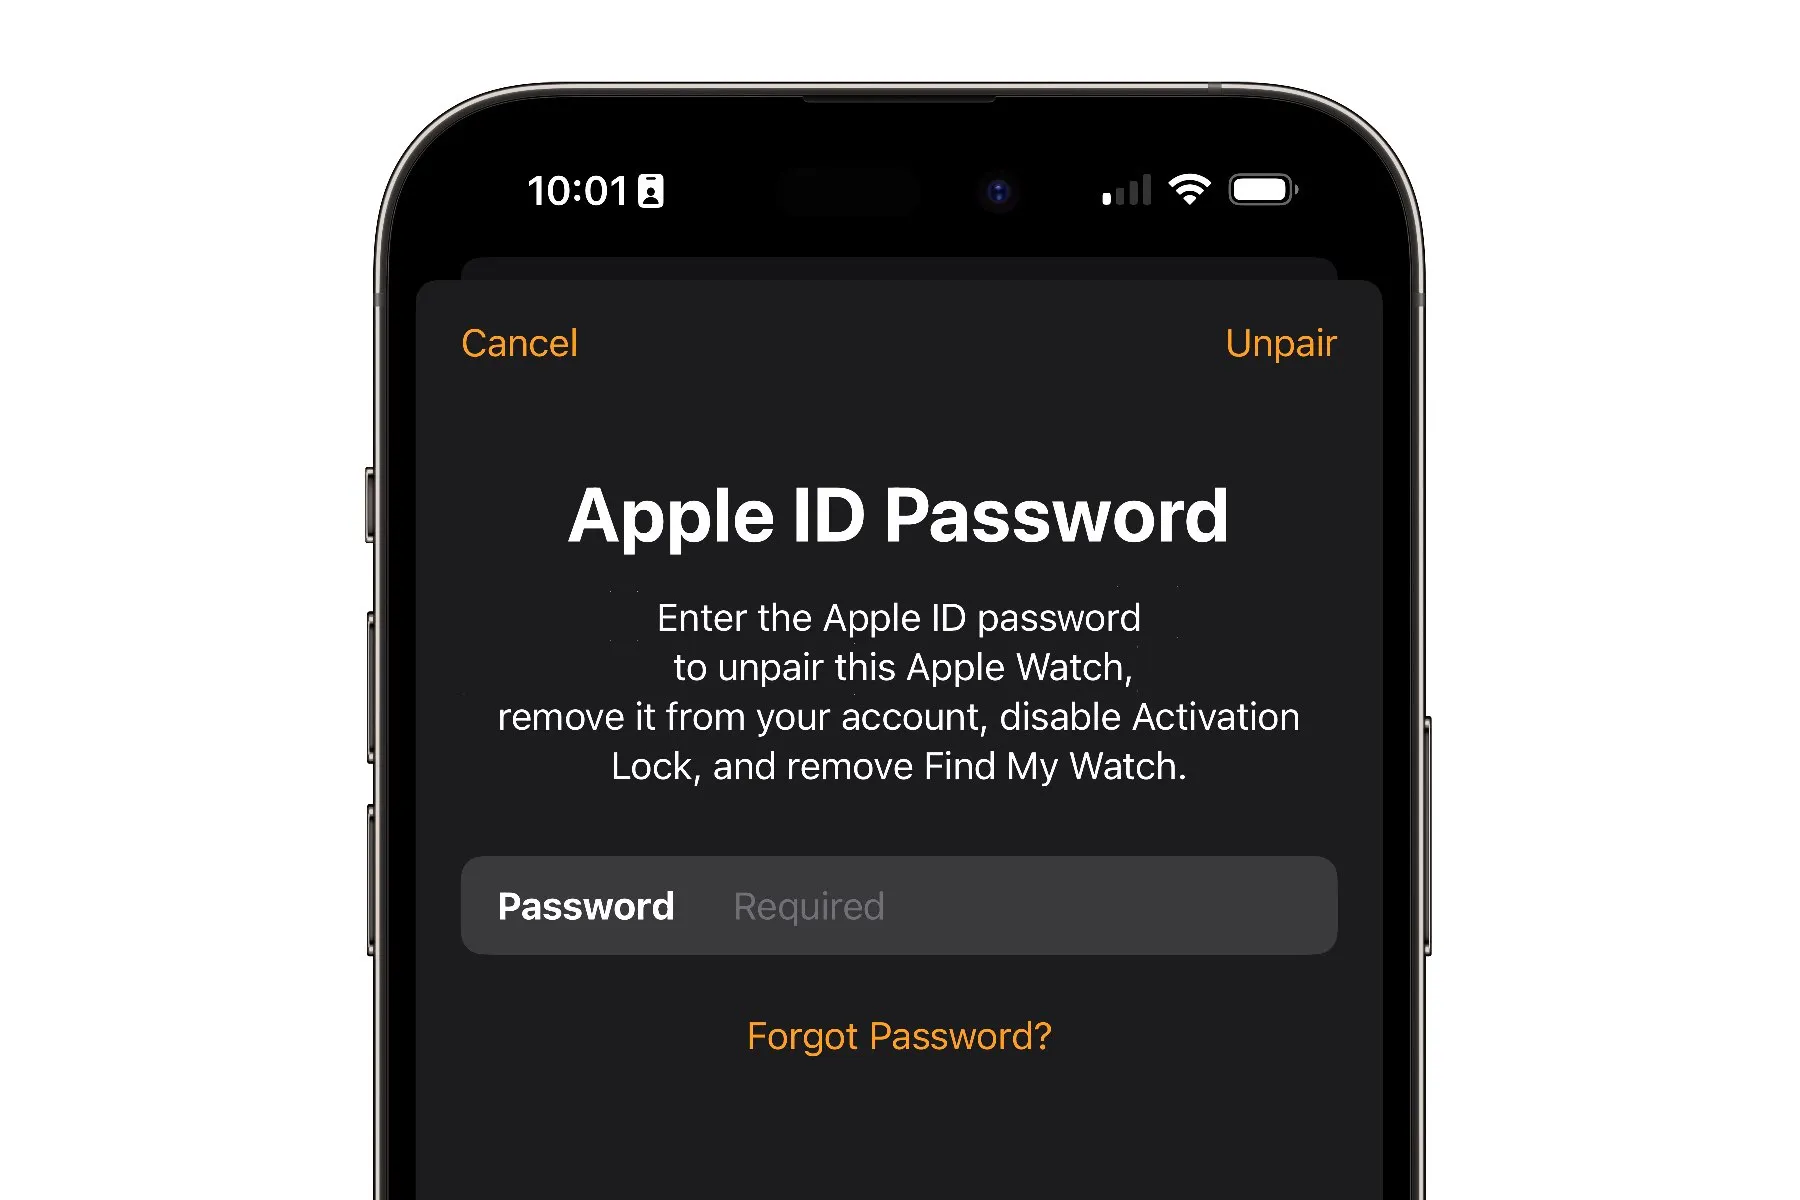 iPhone mostrando el mensaje para ingresar la contraseña de Apple ID al desemparejar el Apple Watch.